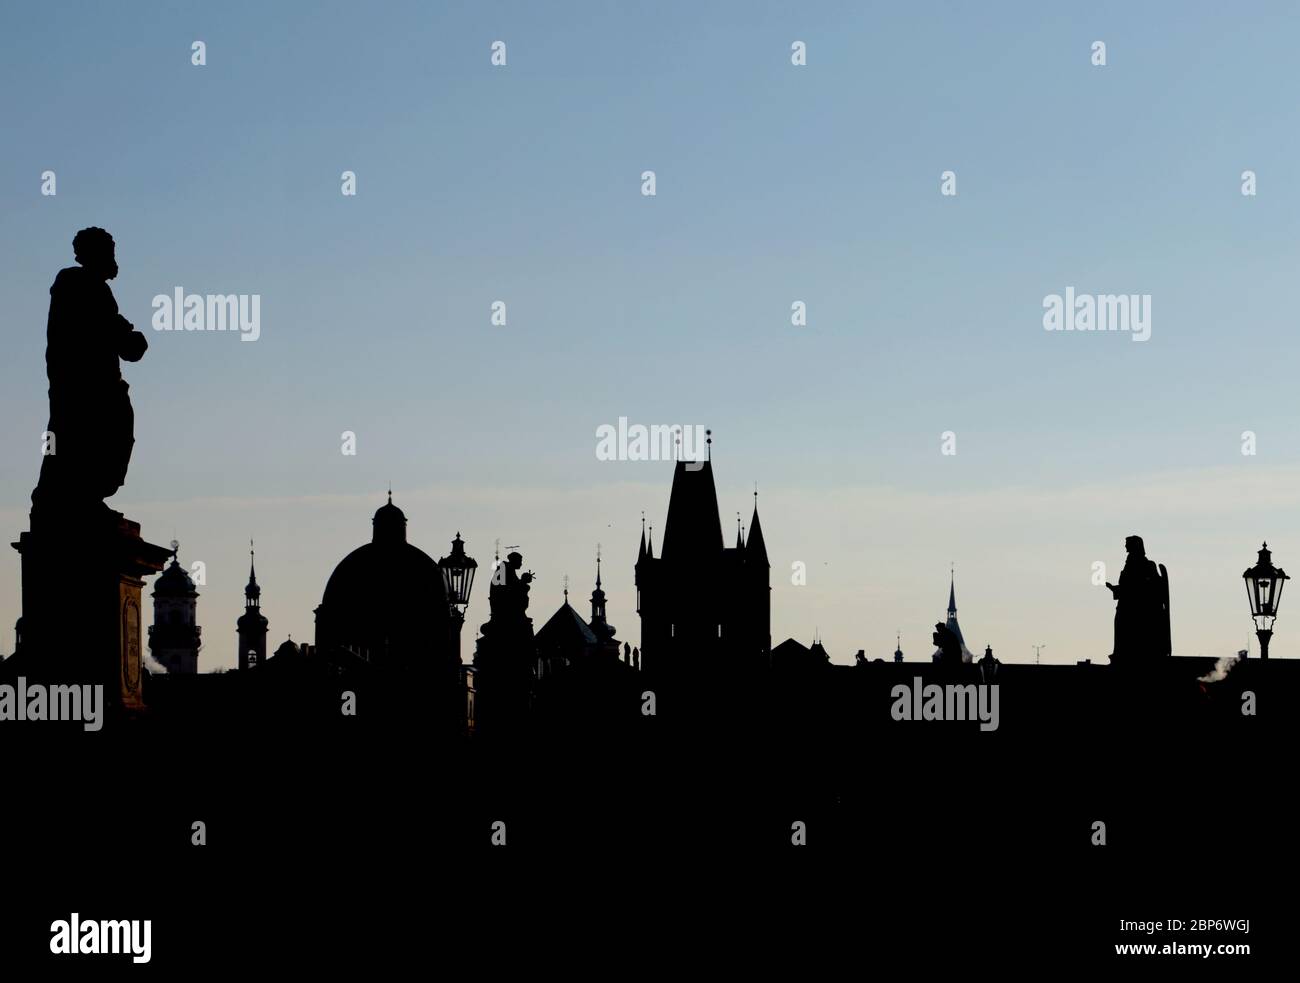 Sonnenuntergang über Prag, Charles Karlov Brücke ist berühmte Attraktion, Weltkulturerbe. Historische Stadt der Hauptstadt der Tschechischen Republik, kulturelles Zentrum Europas. Gotik, Renaissance und Barock. Stockfoto